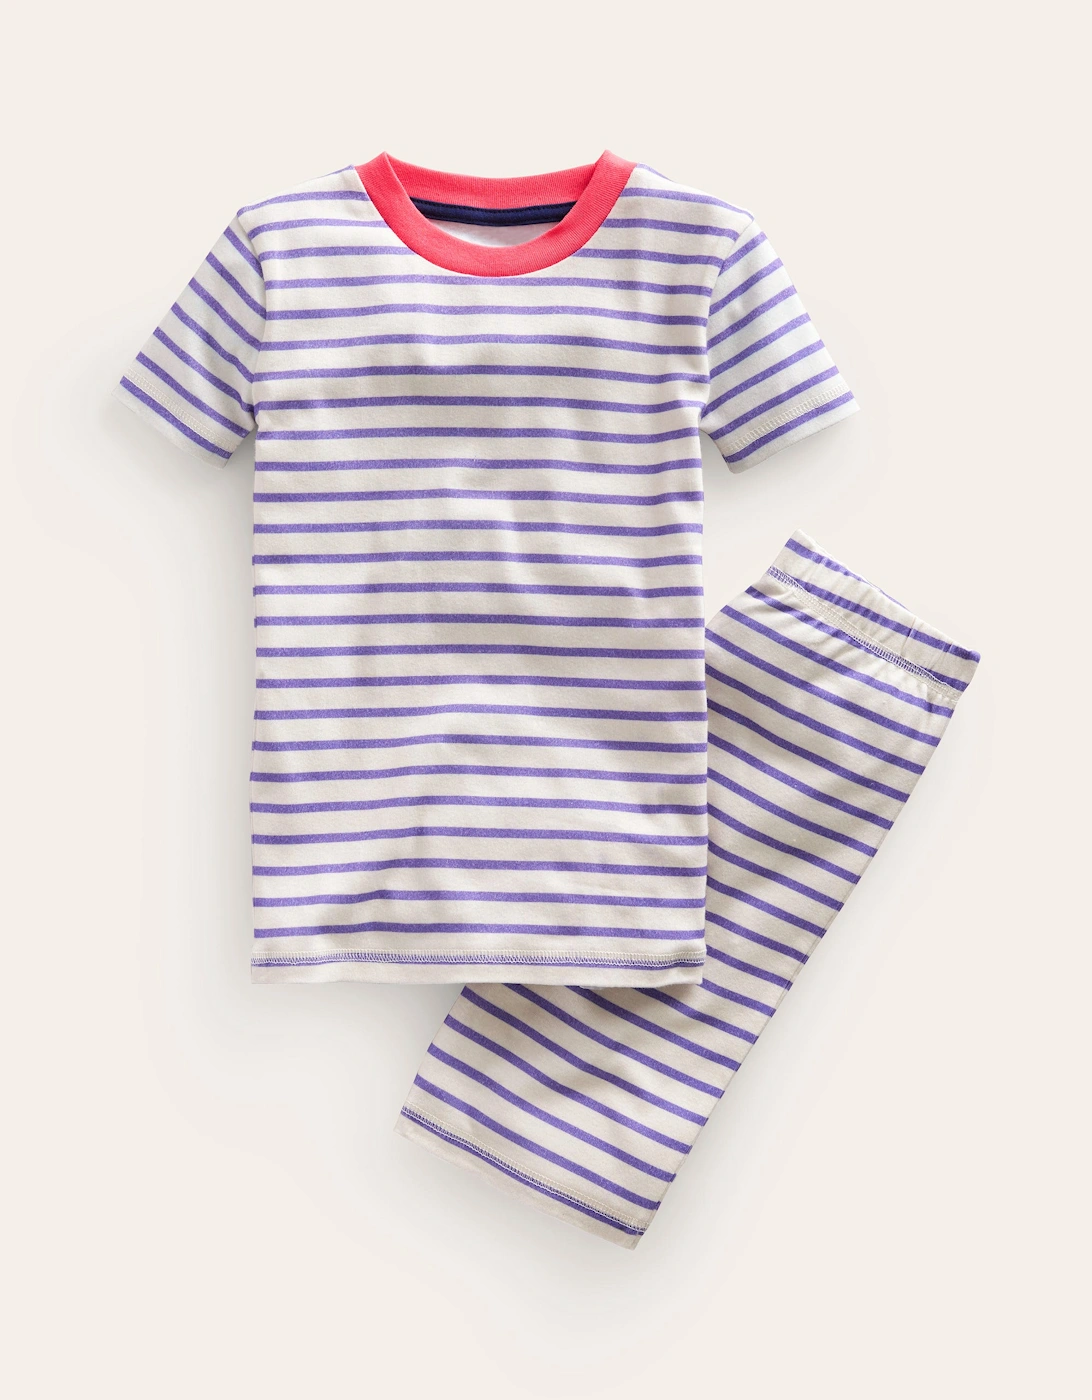 Snug Striped Short Pyjamas, 2 of 1